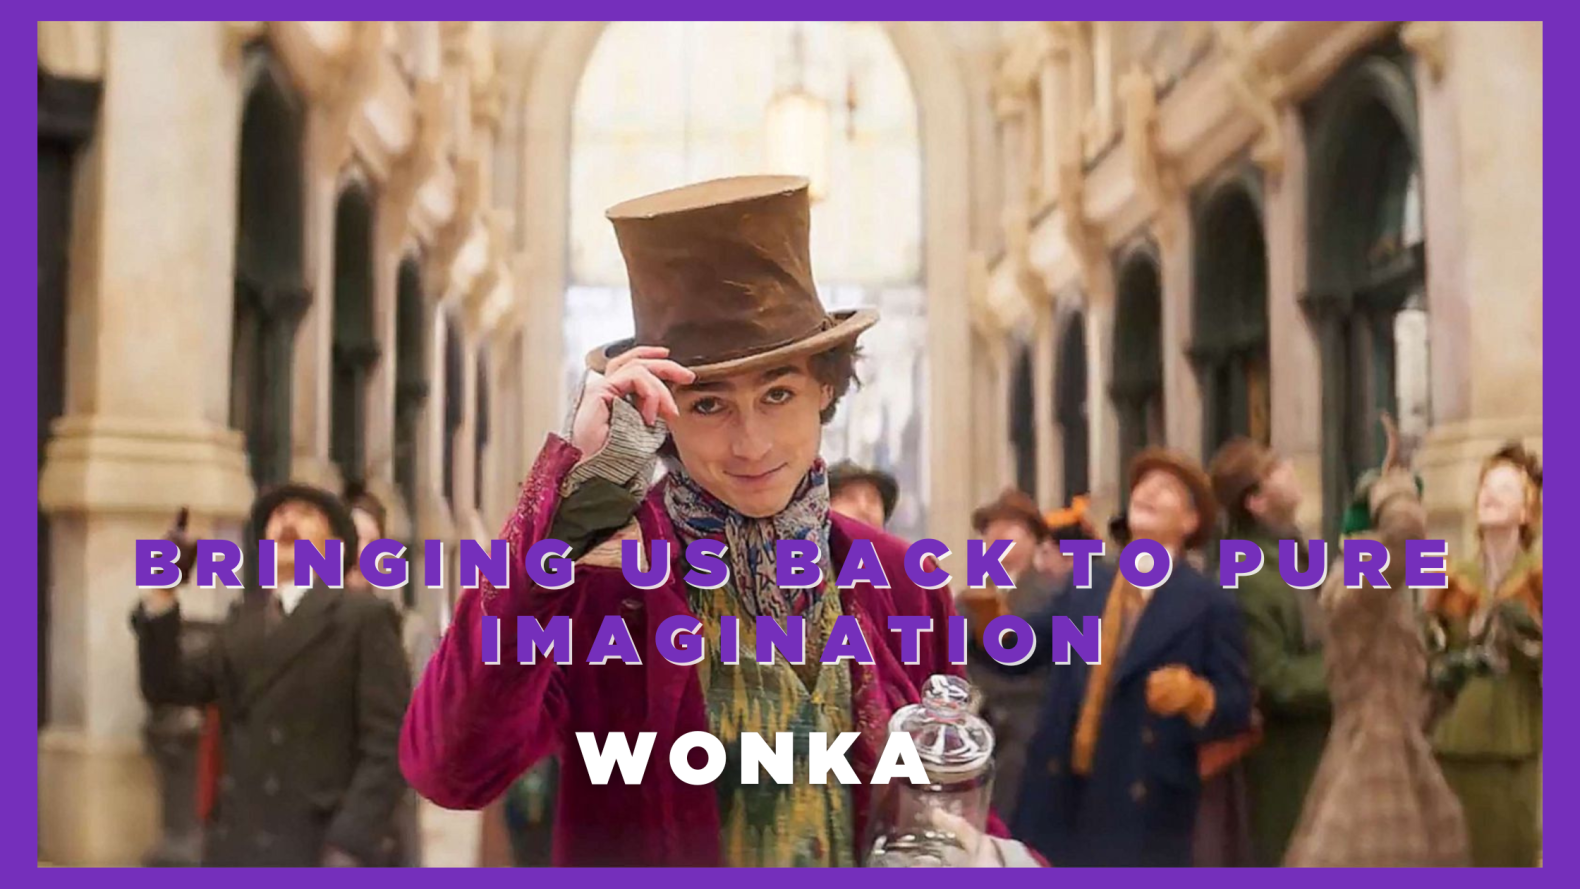 Wonka – Bringing Us Back to Pure Imagination